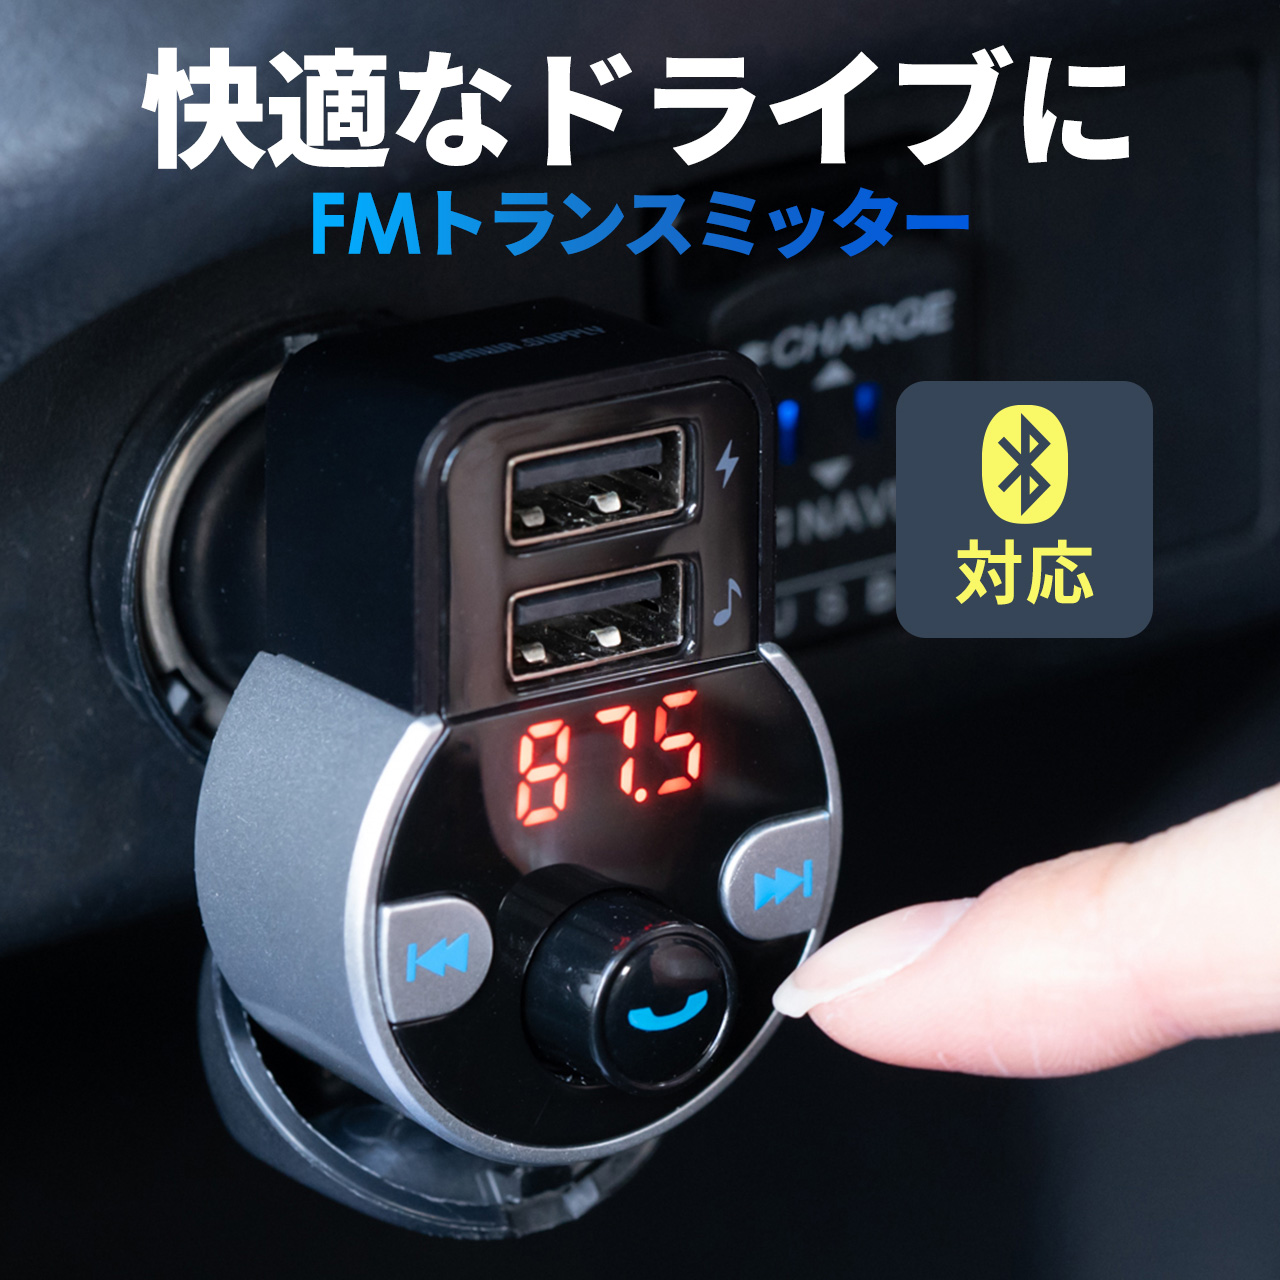 FMトランスミッター シガーゾケット ハンズフリー Bluetooth